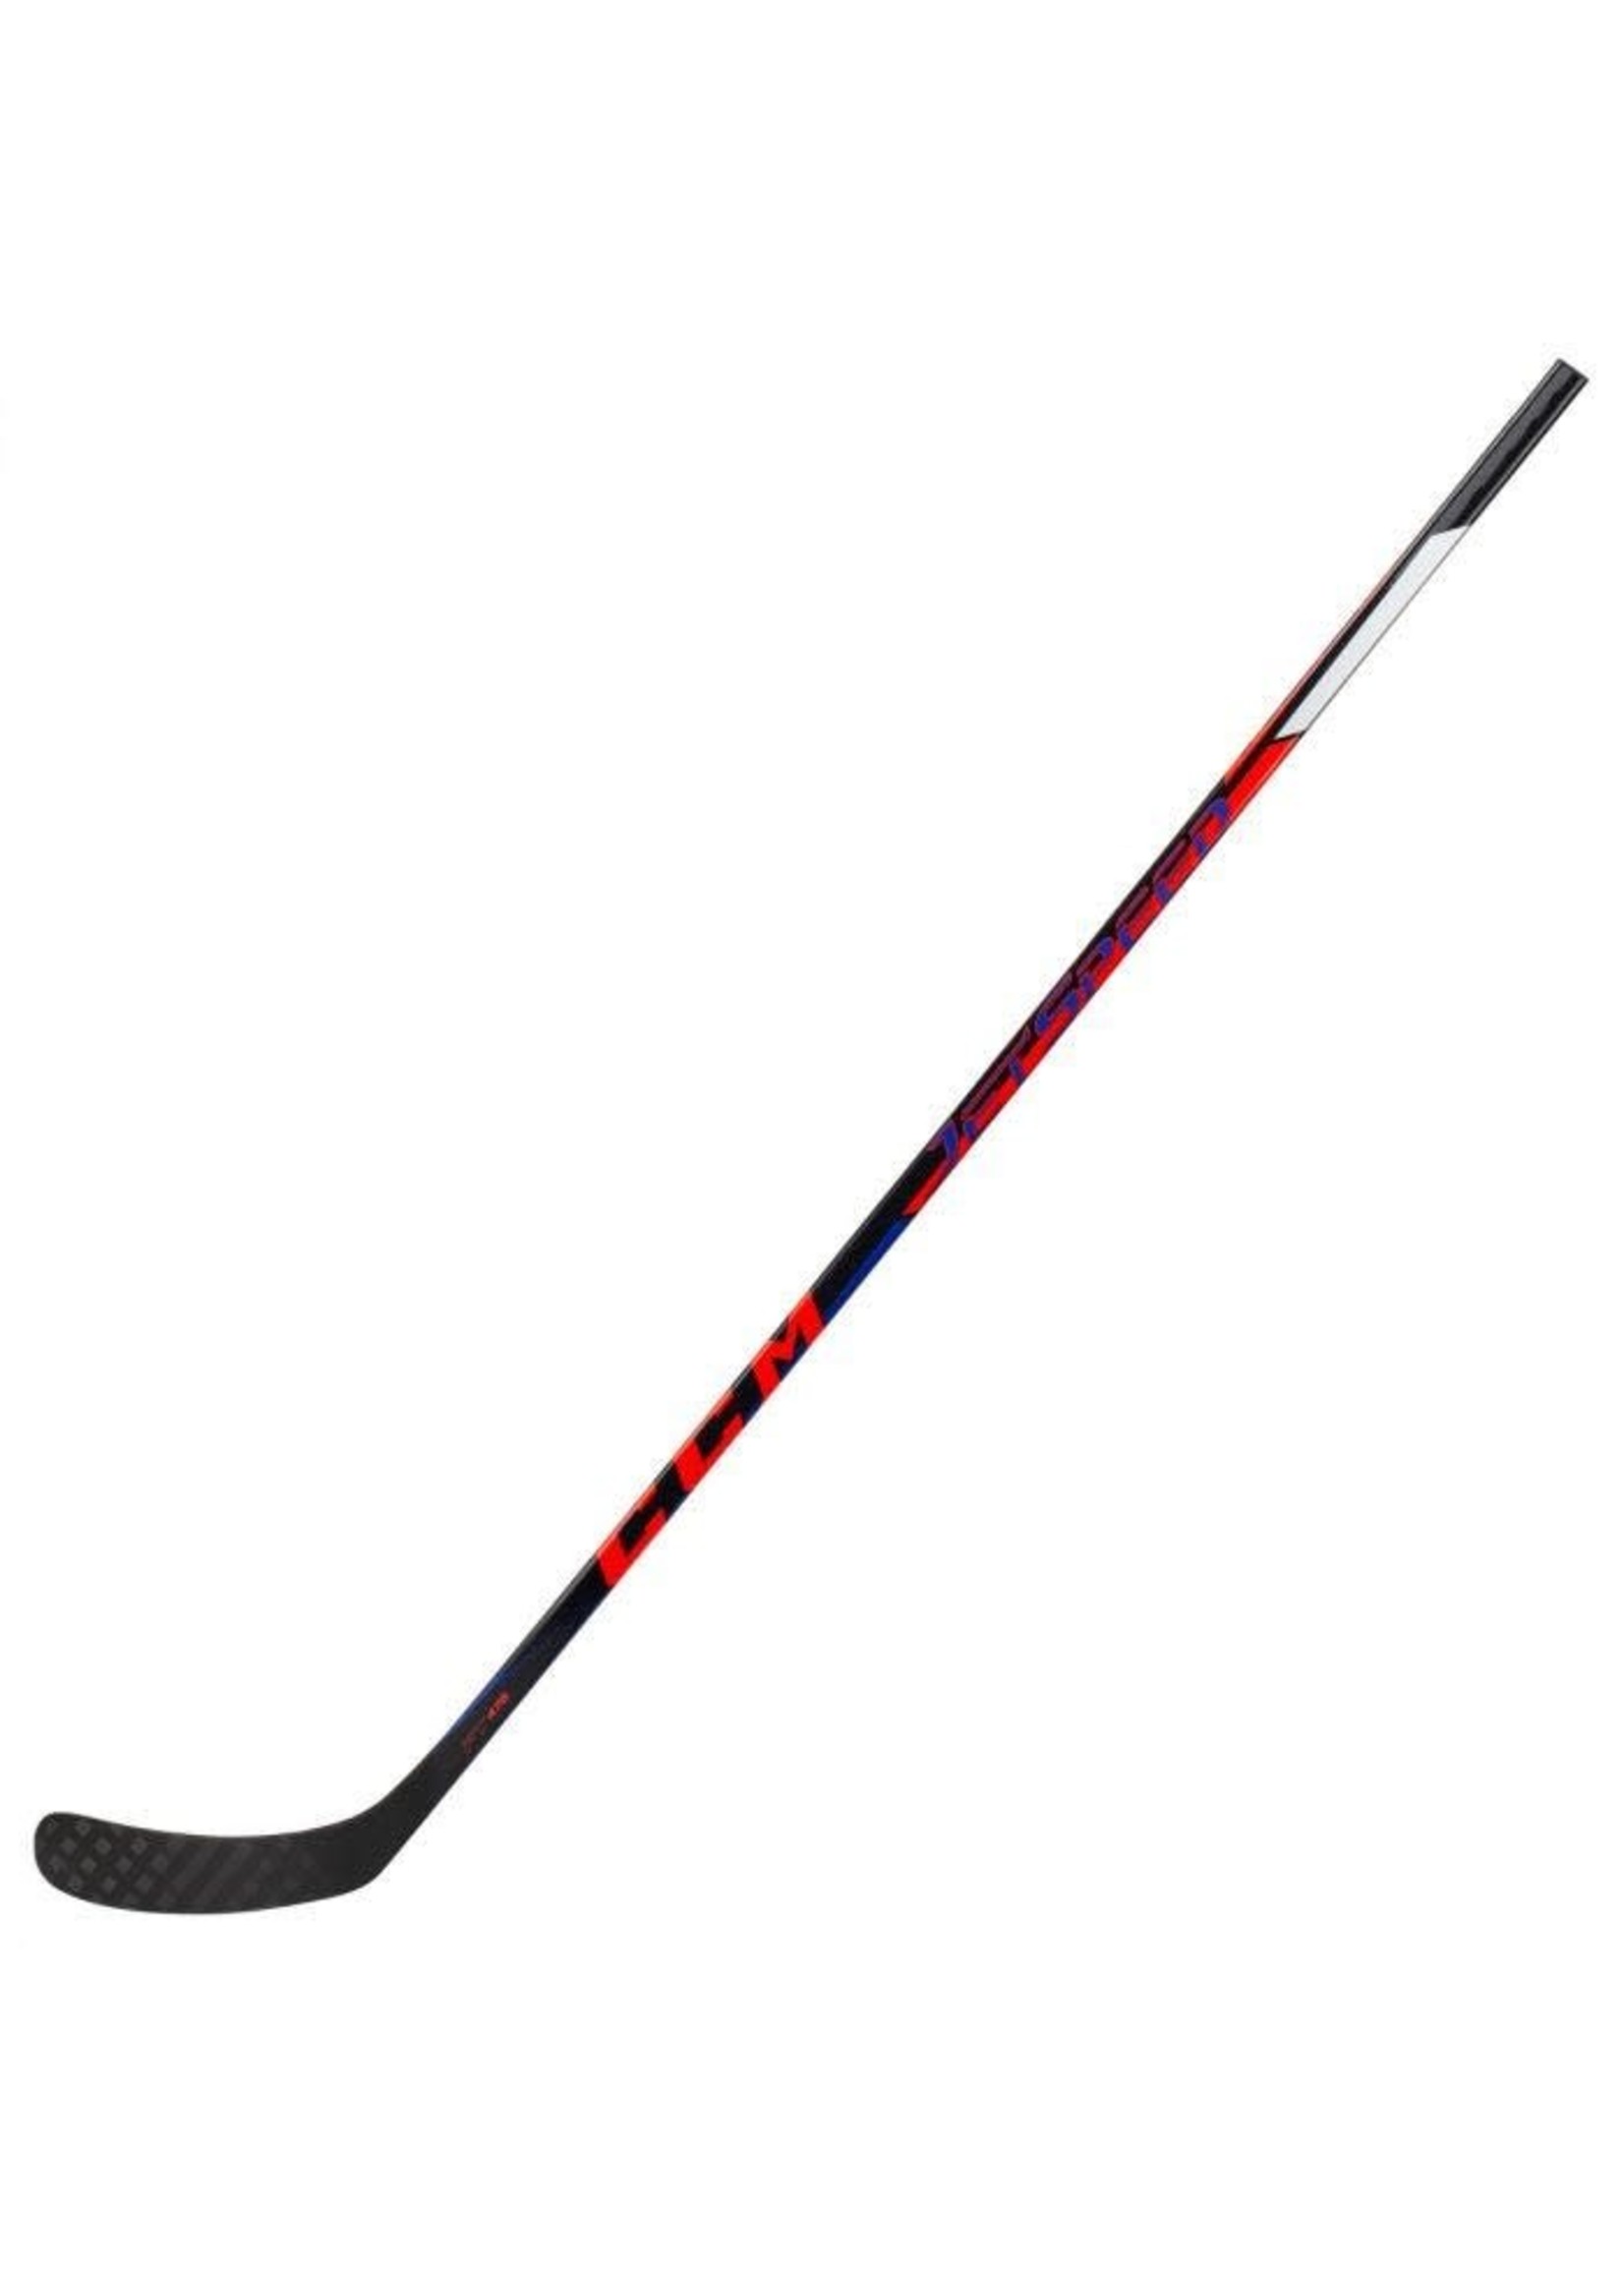 CCM Hockey (USA) CCM Jetspeed FT475 Stick - Senior